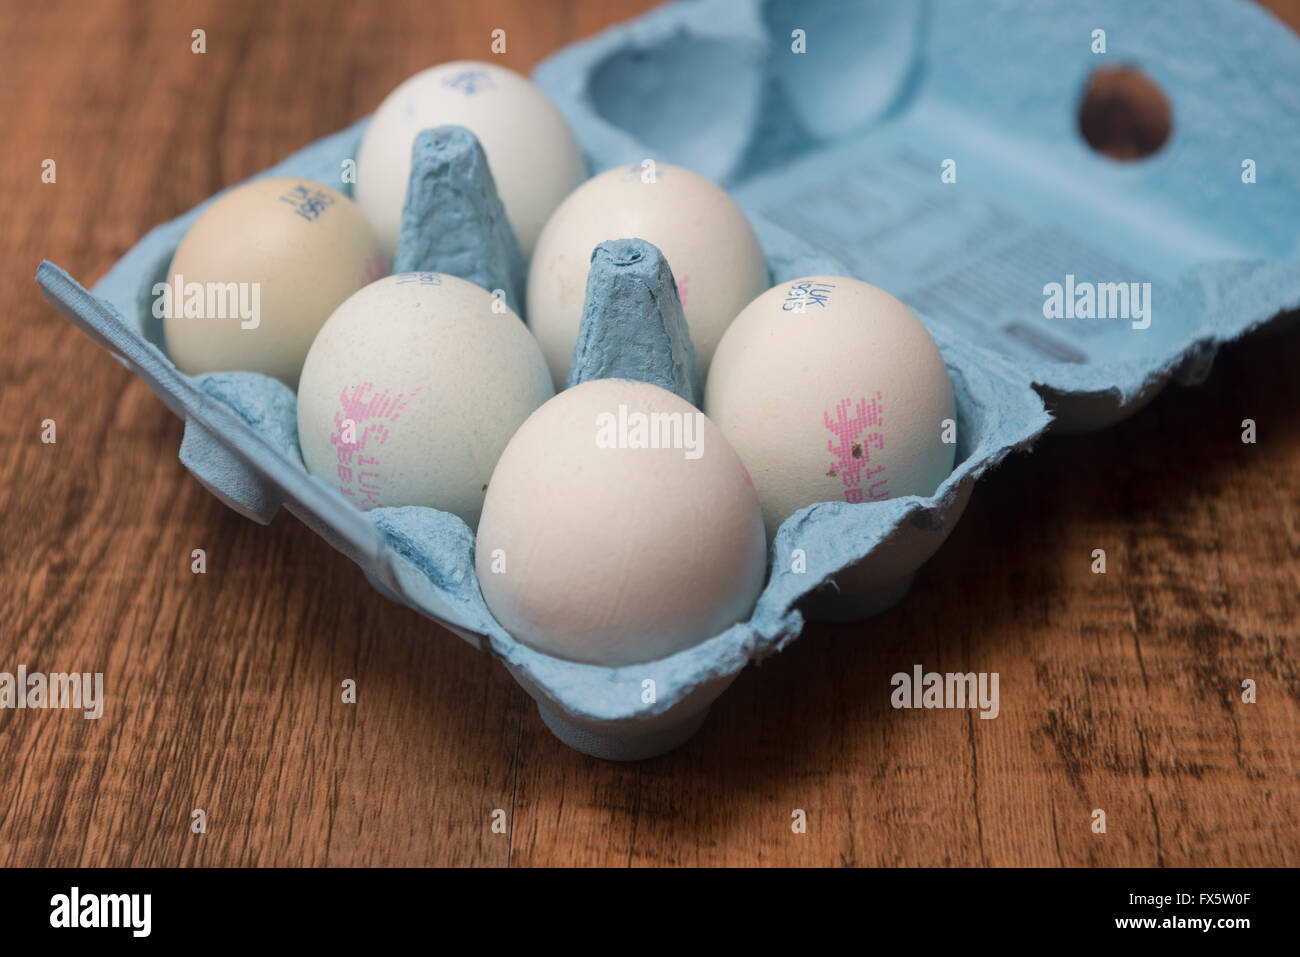 Media docena de huevos de gallina Araucana en un cuadro Foto de stock